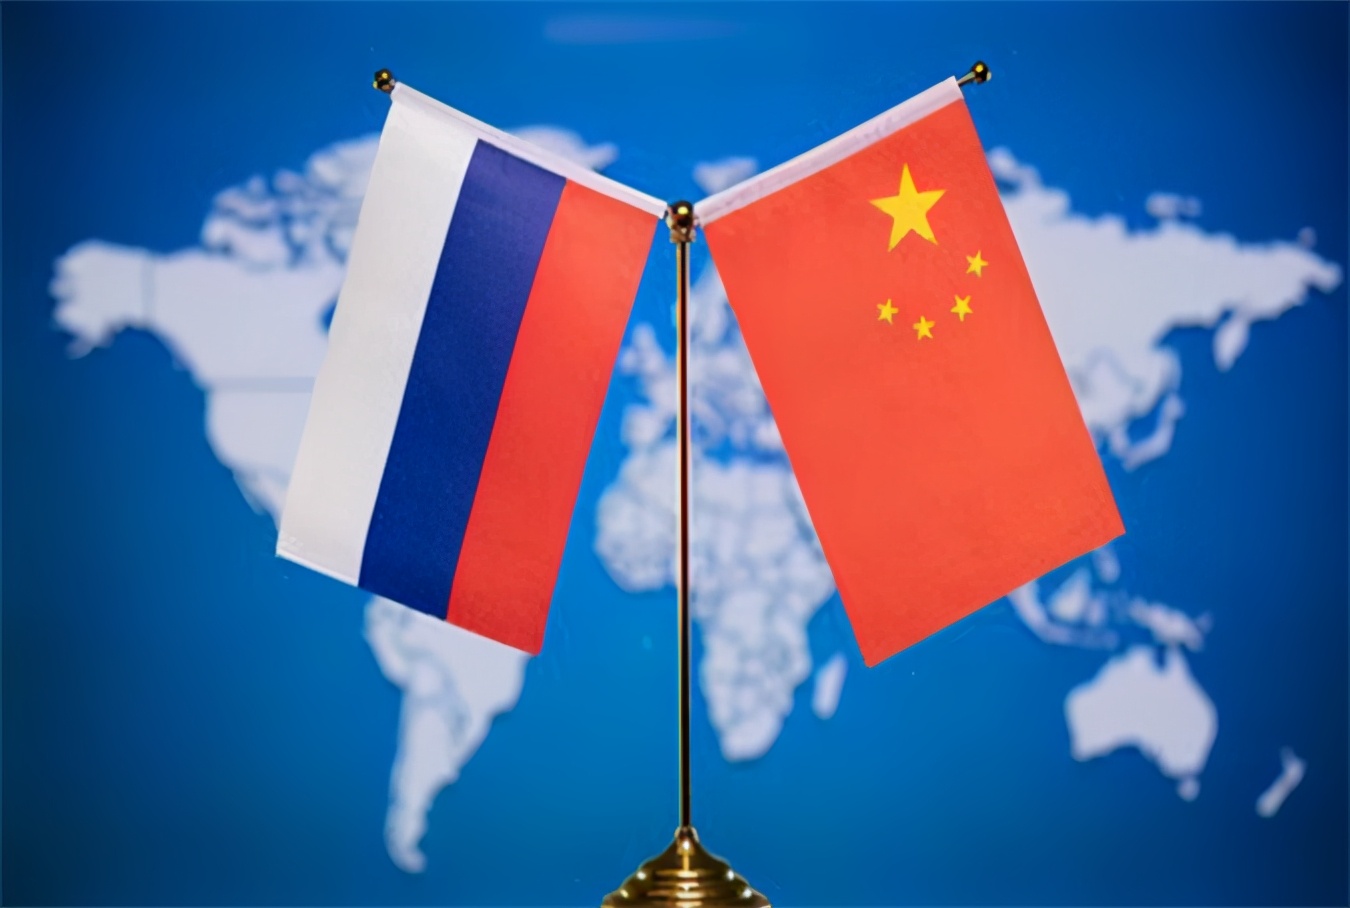 中俄友好条约签署20年,俄方用中国名言鼓劲,愿两国友谊世代相传